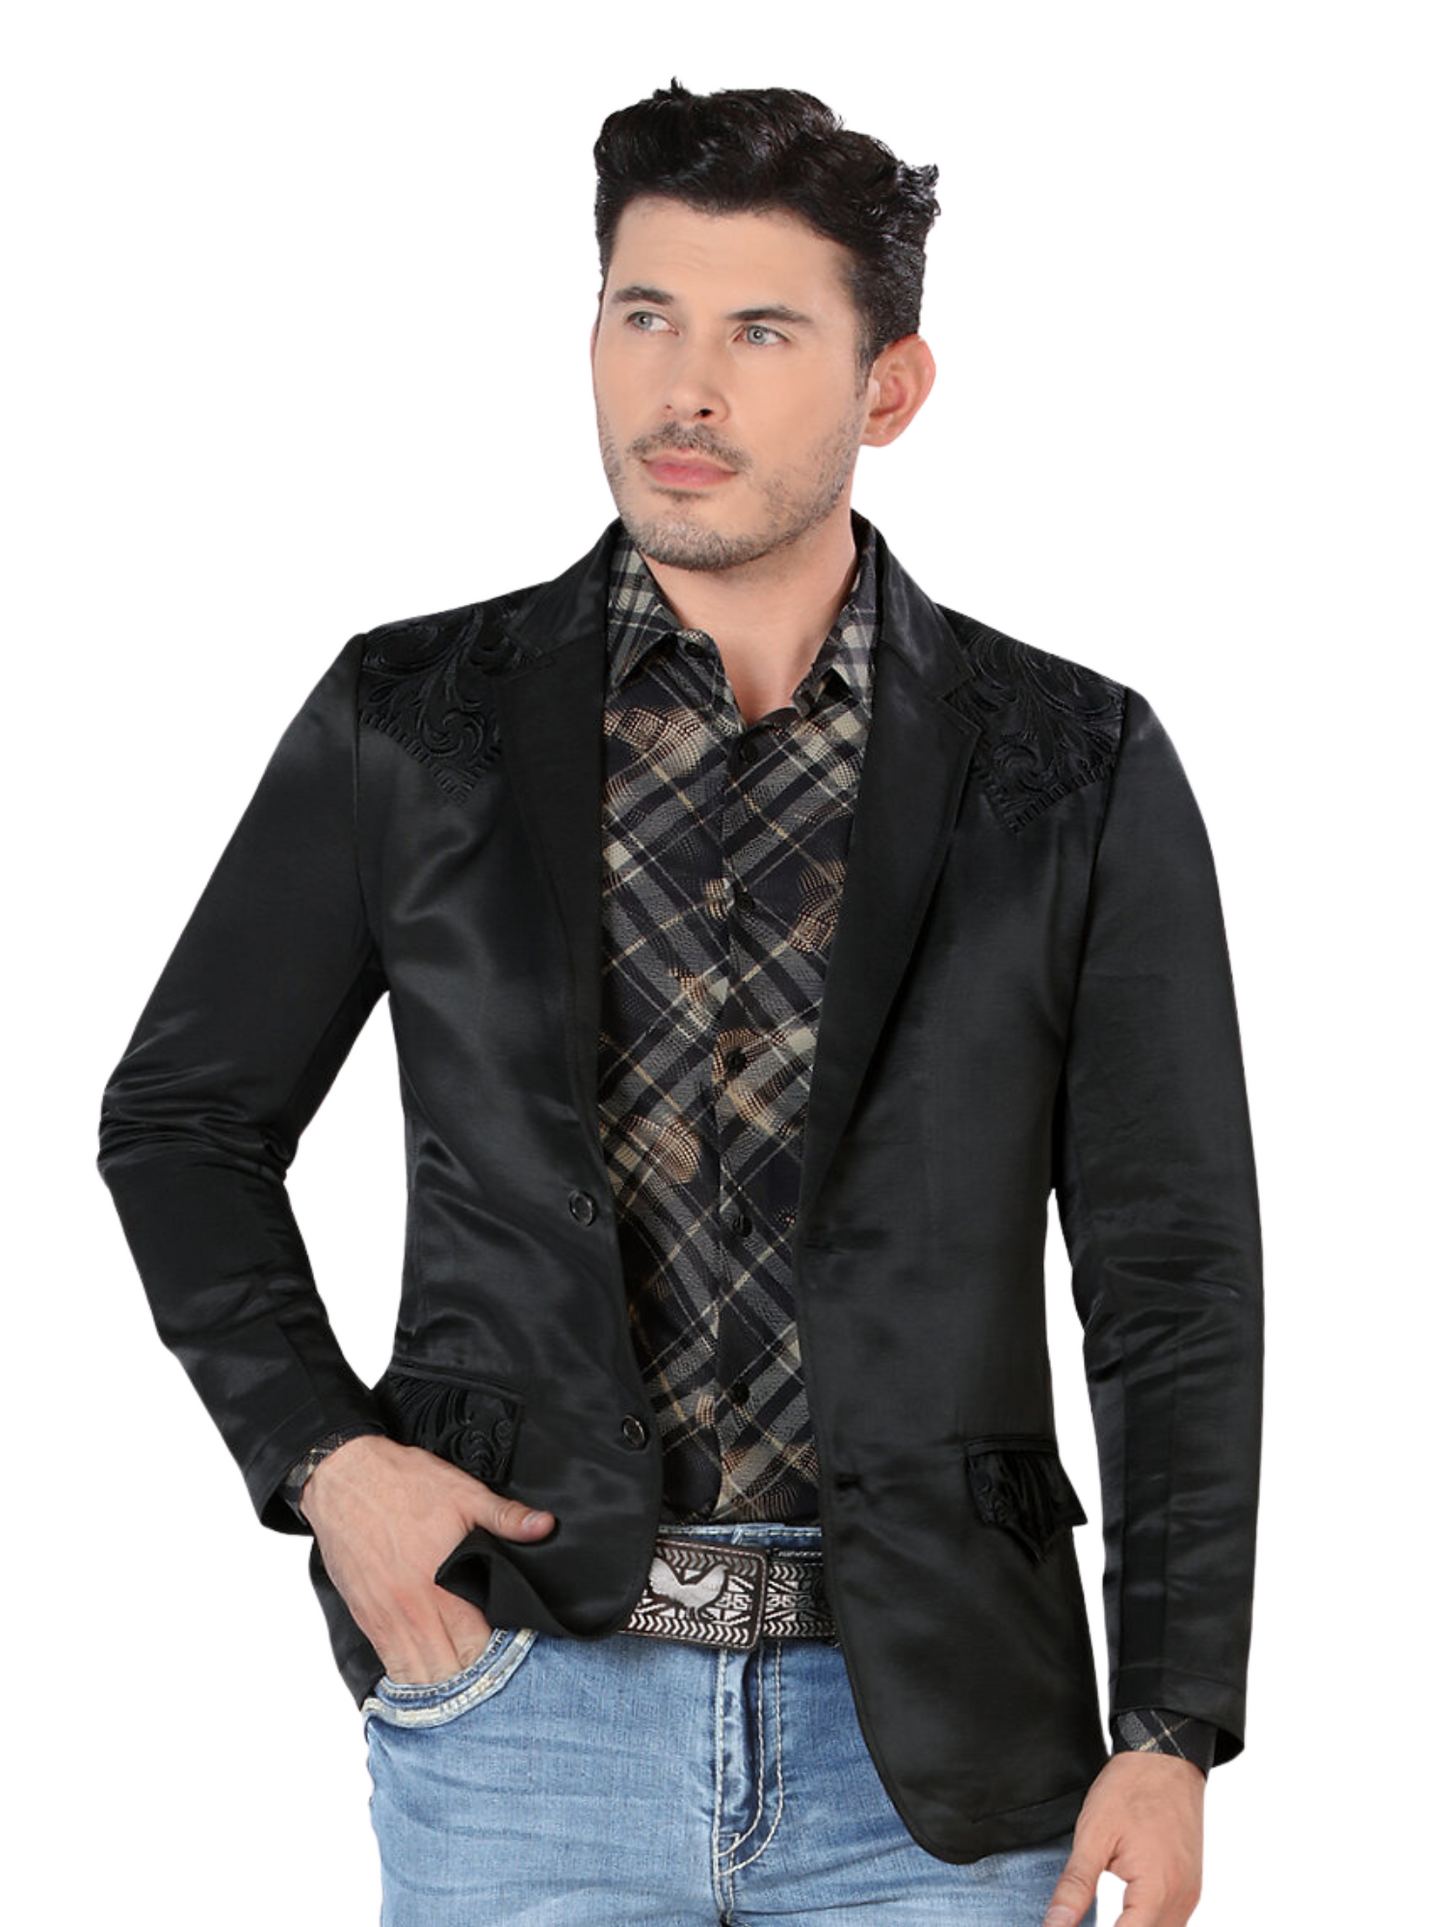 Embroidered Denim Jacket for Men 'Montero' - ID: 2178 Western Blazer Montero Black/Black